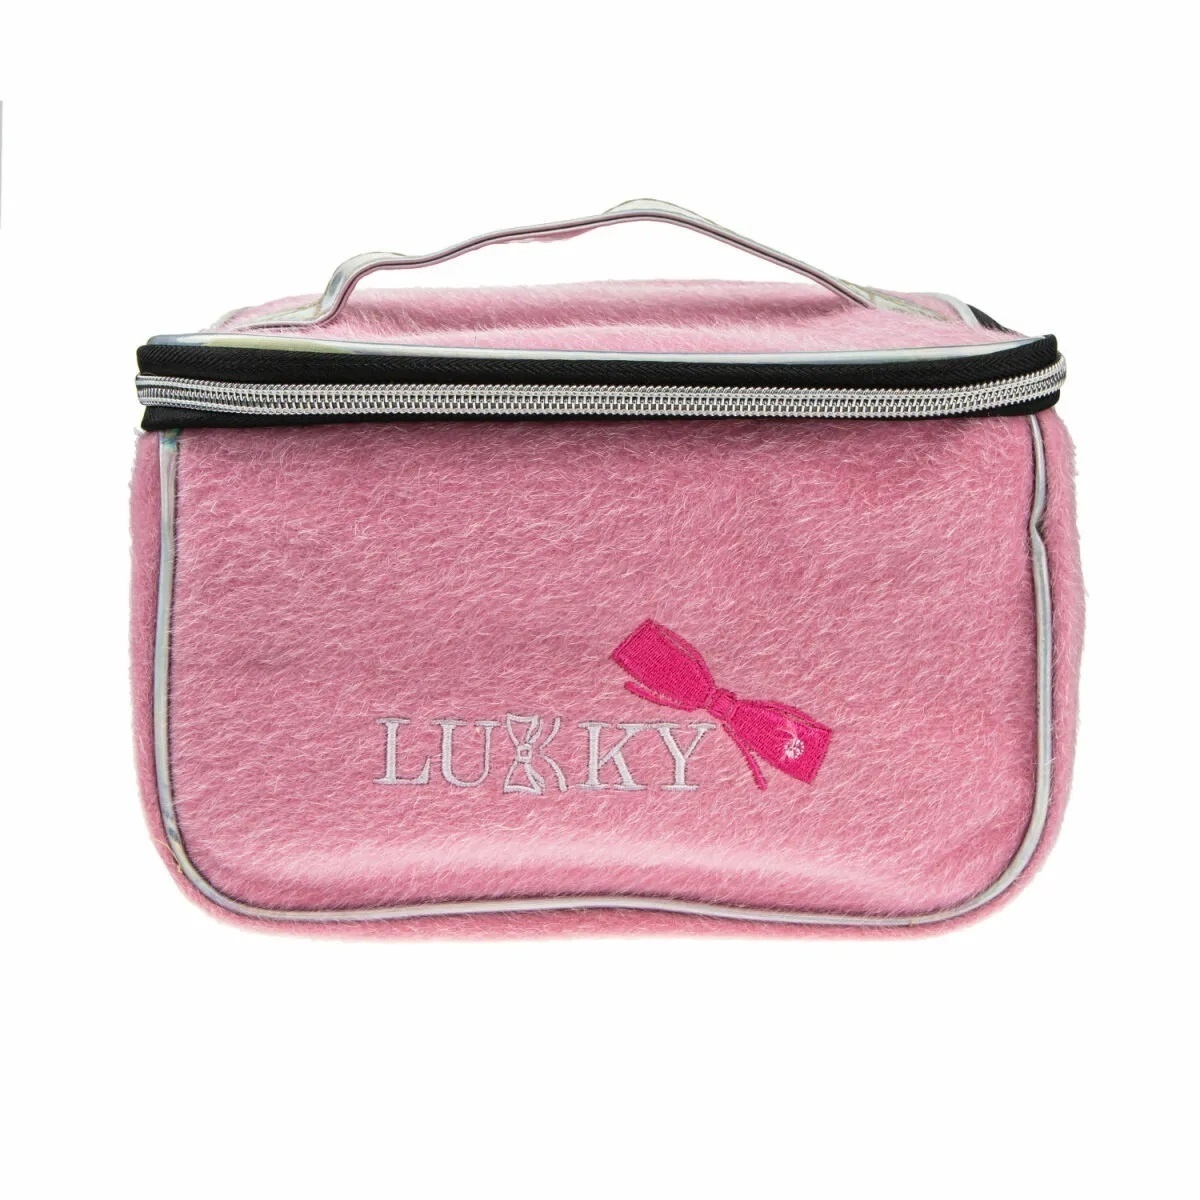 Lukky Т21413 Косметичка-чемоданчик с лого розовая 23*16*13см - Магнитогорск 